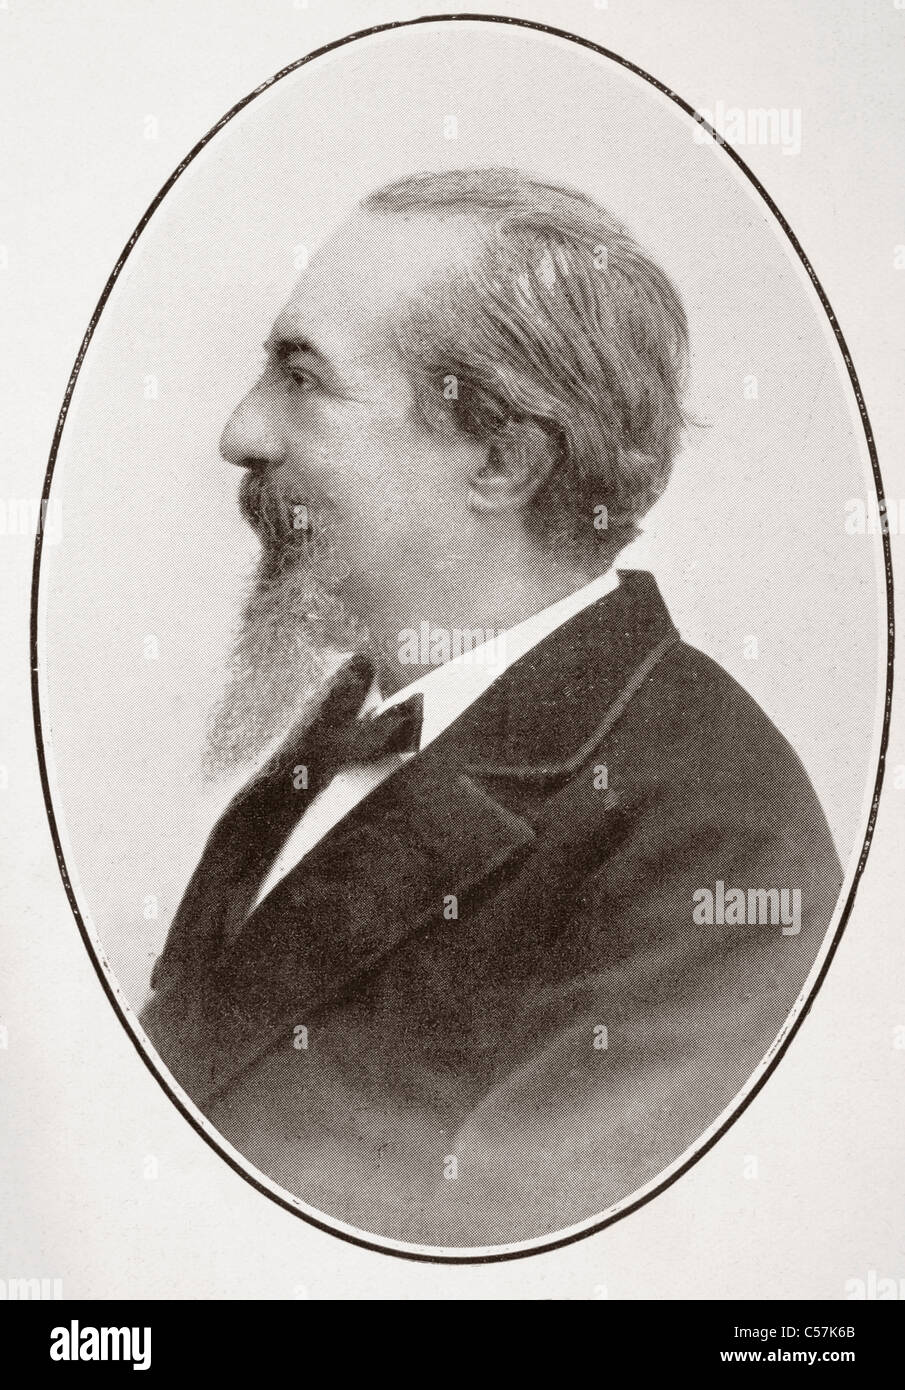 José Zorrilla y moral, 1817 - 1893. Poeta y dramaturgo español romántico. Foto de stock